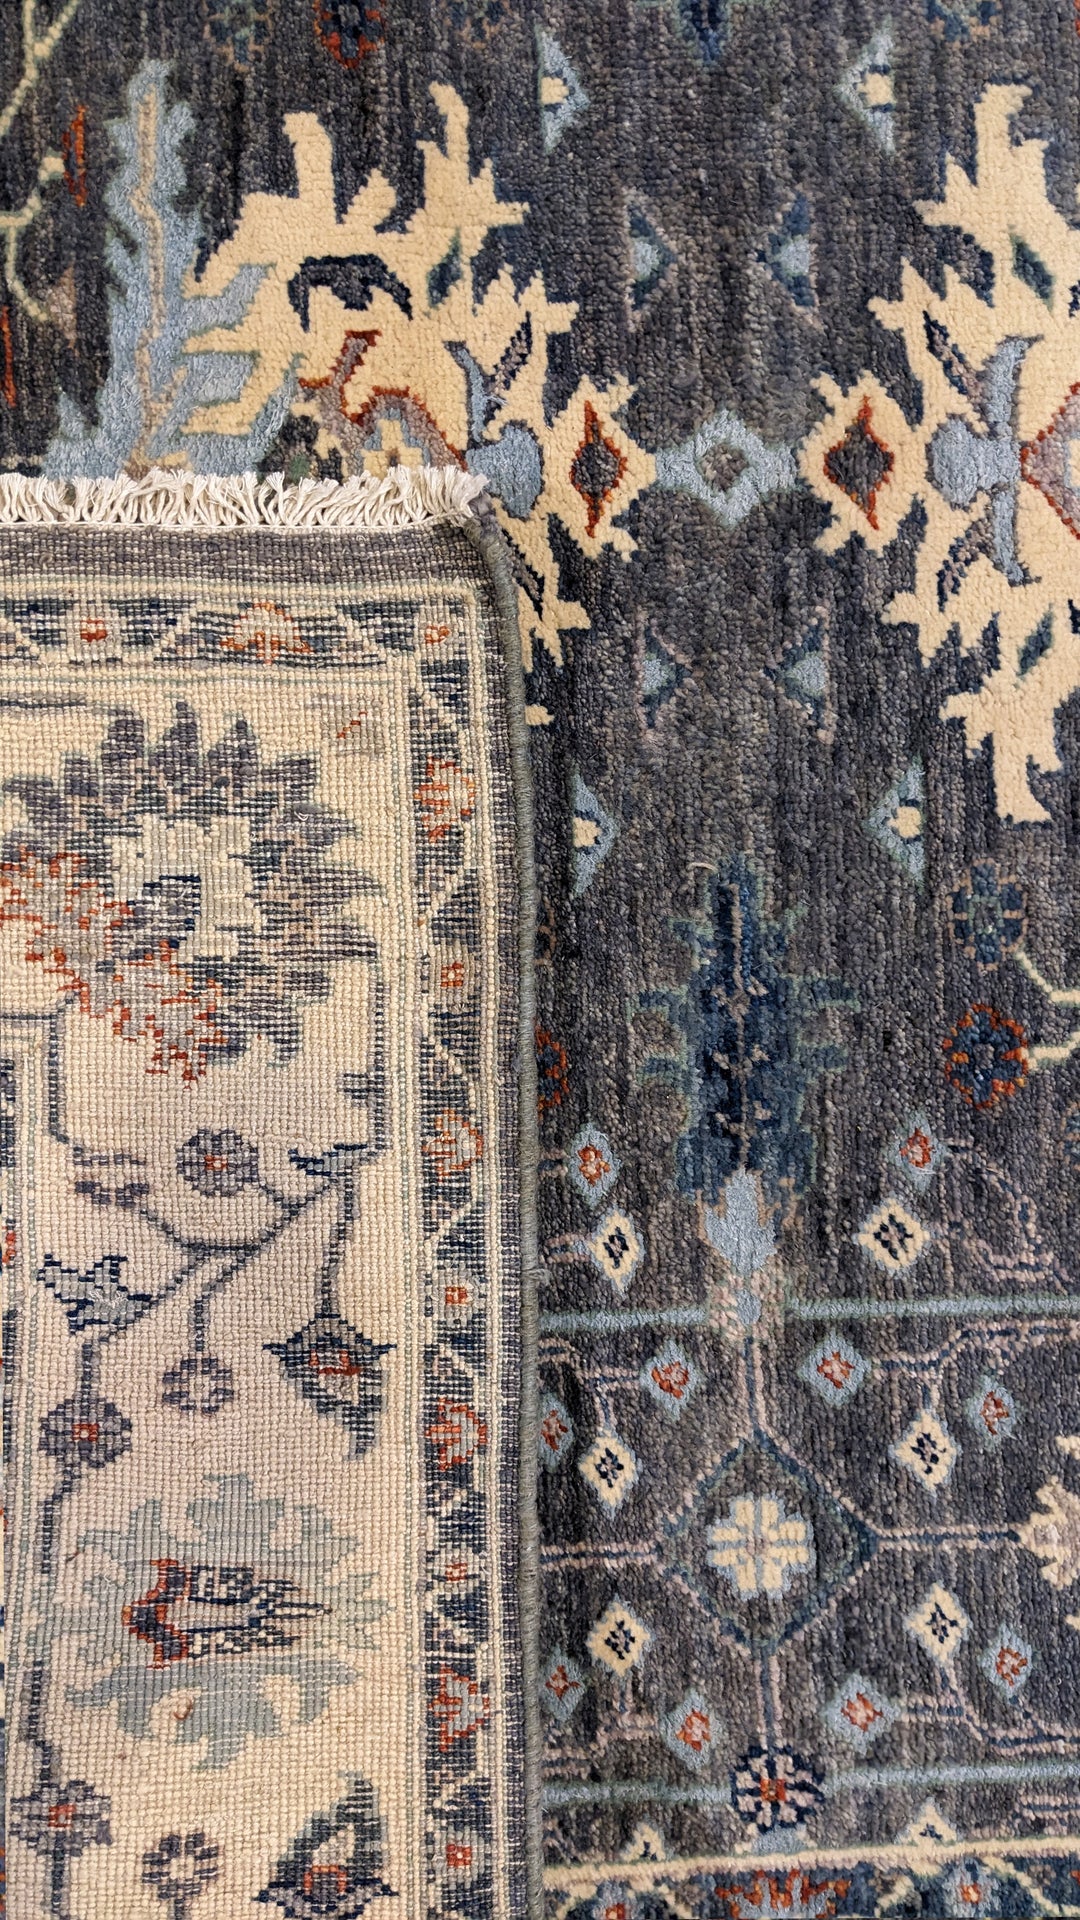 Yaram - Size: 7.11 x 6.1 - Imam Carpet Co